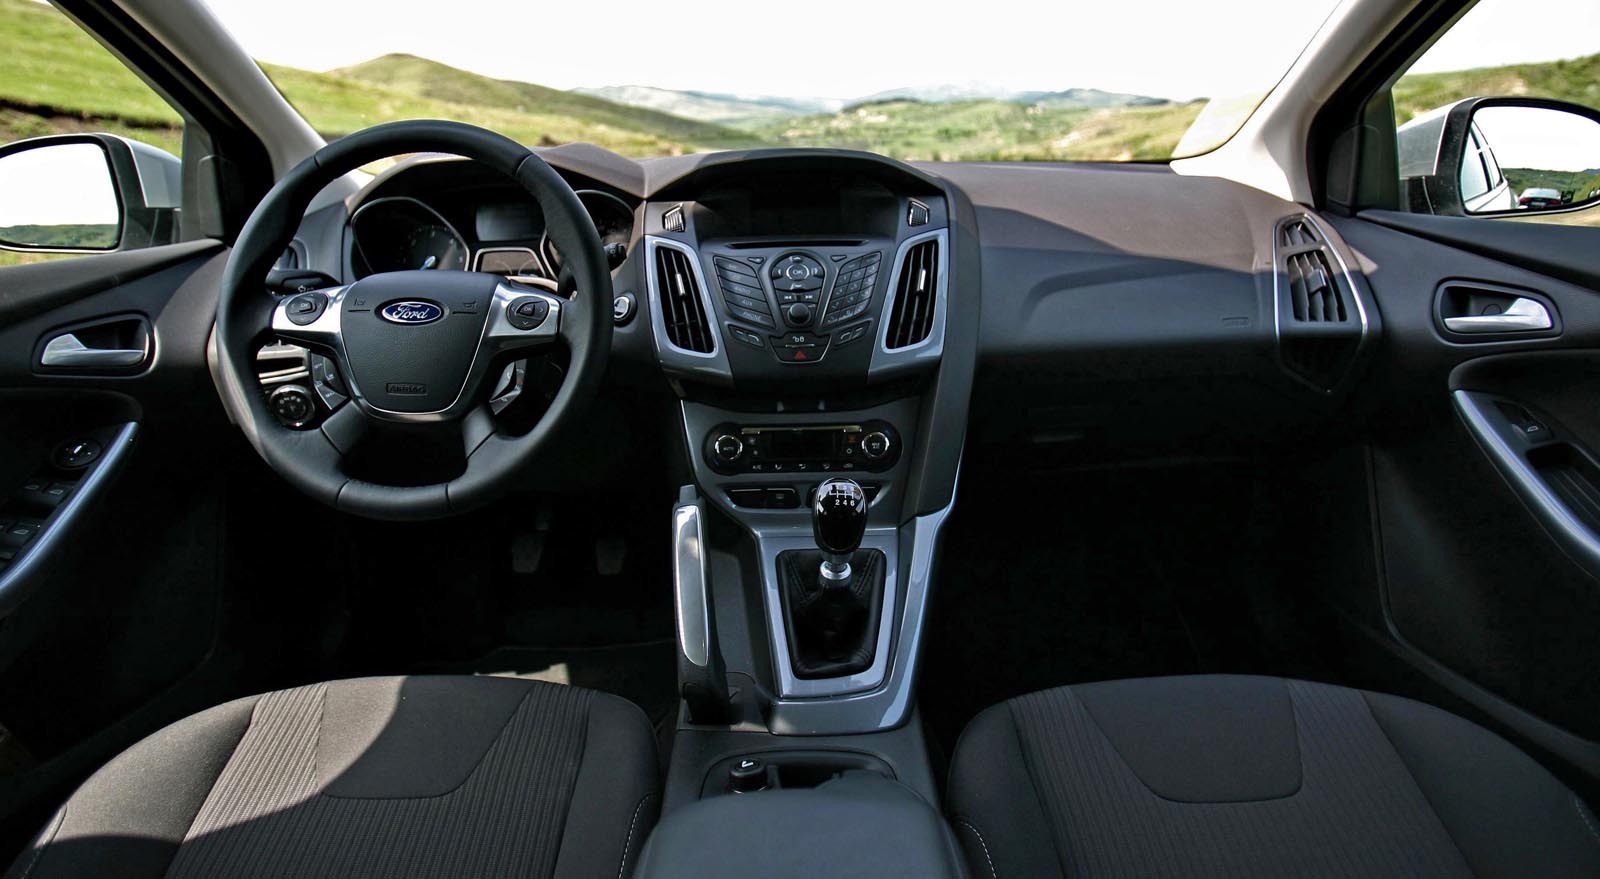 Interiorul noului Ford Focus este foarte modern si exprima sportivitate si high-tech